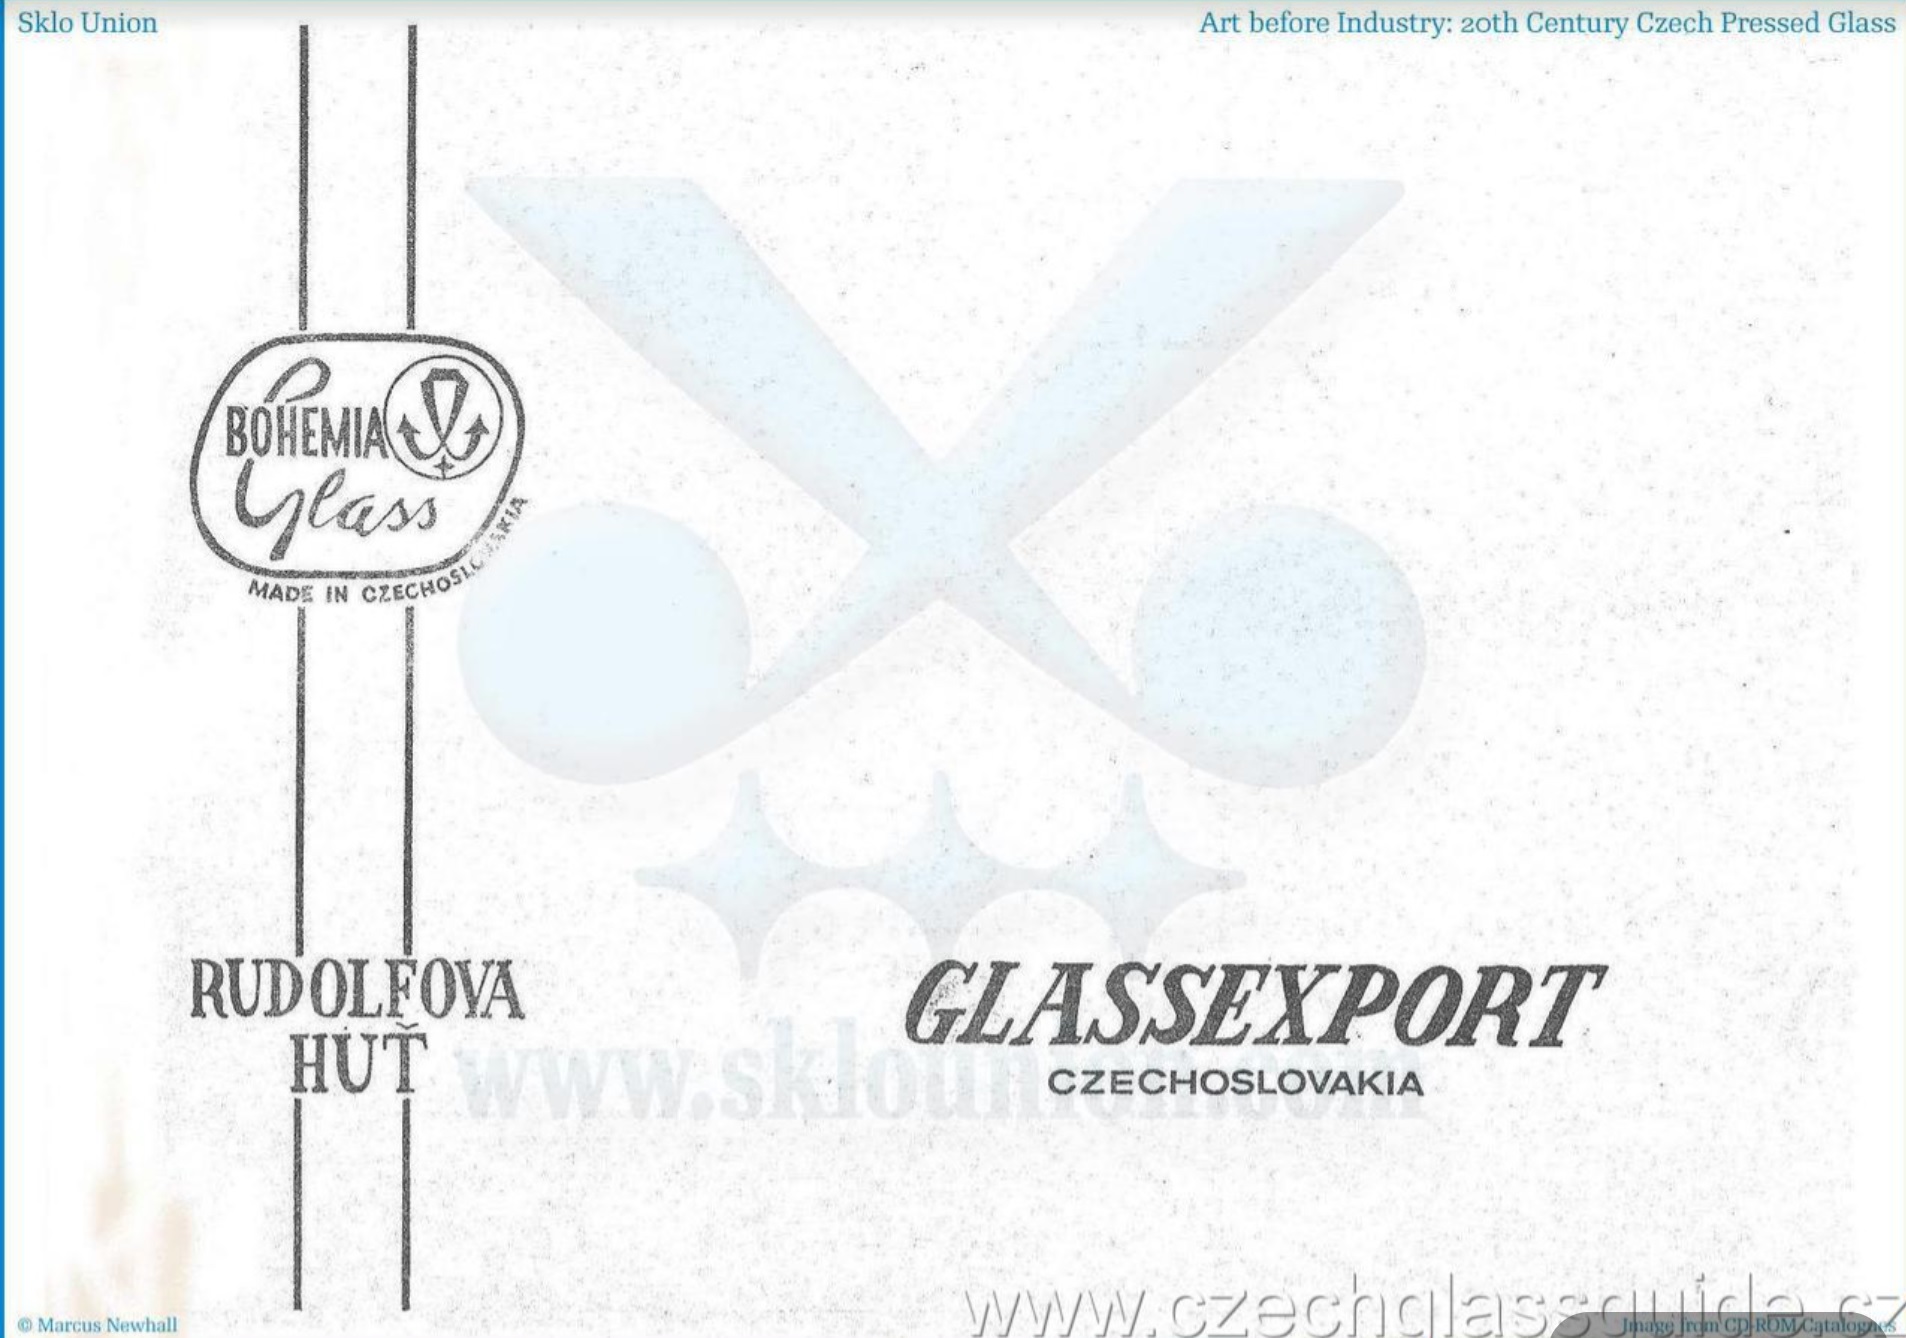 Rudolfova huť - Glassexport 1986